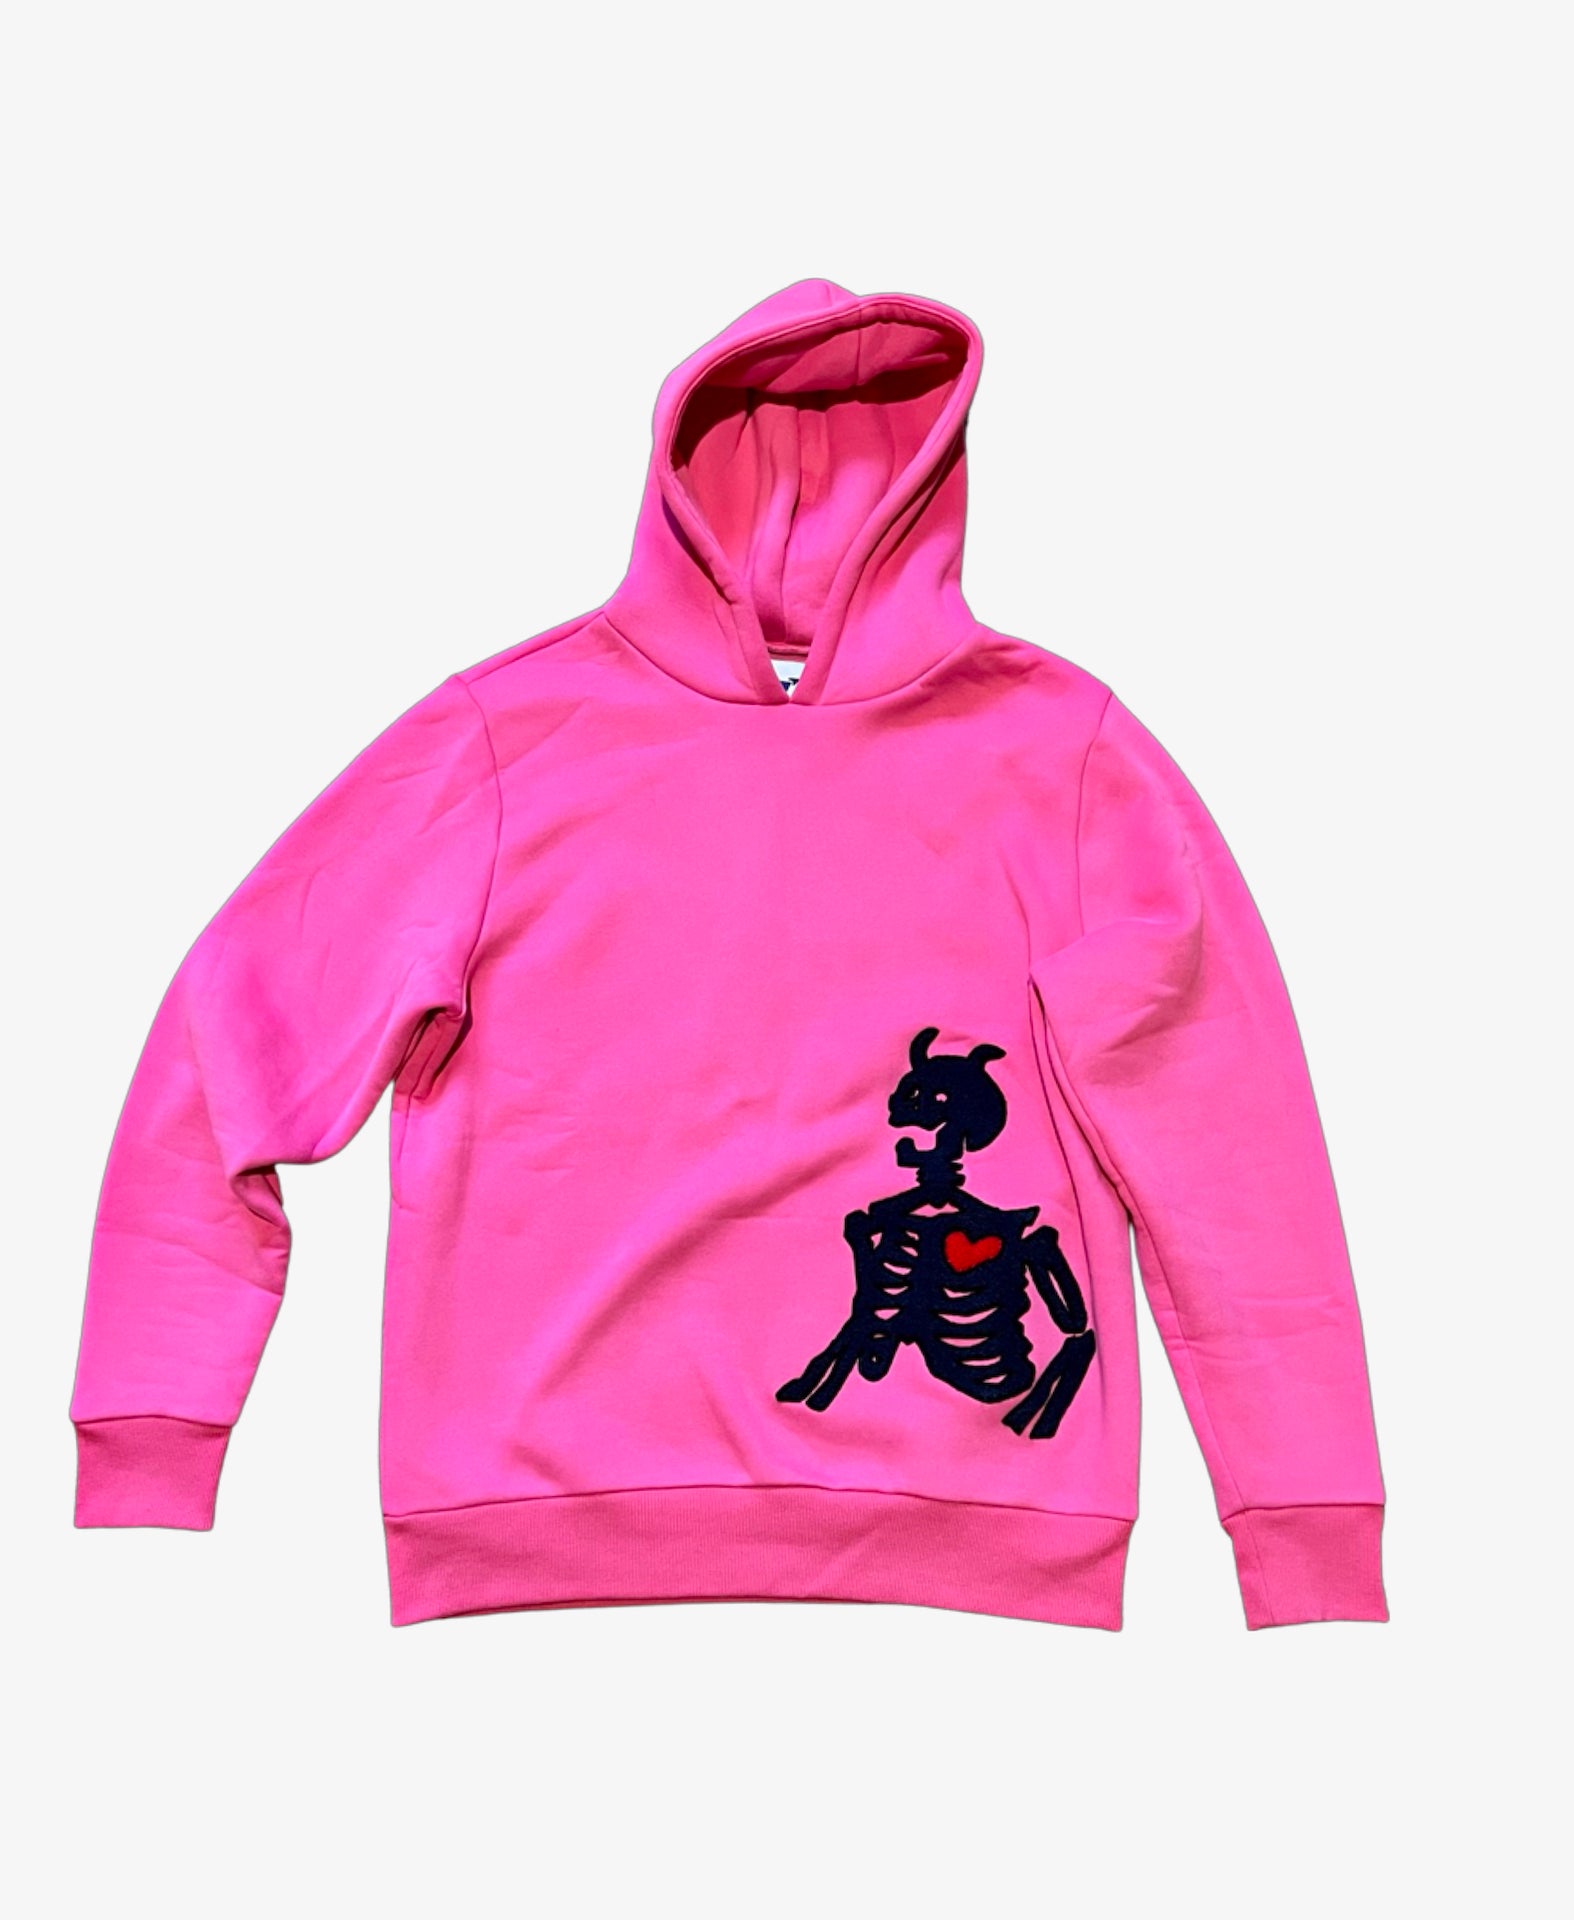 Trust Issues - Pink Skeleton Hoodie